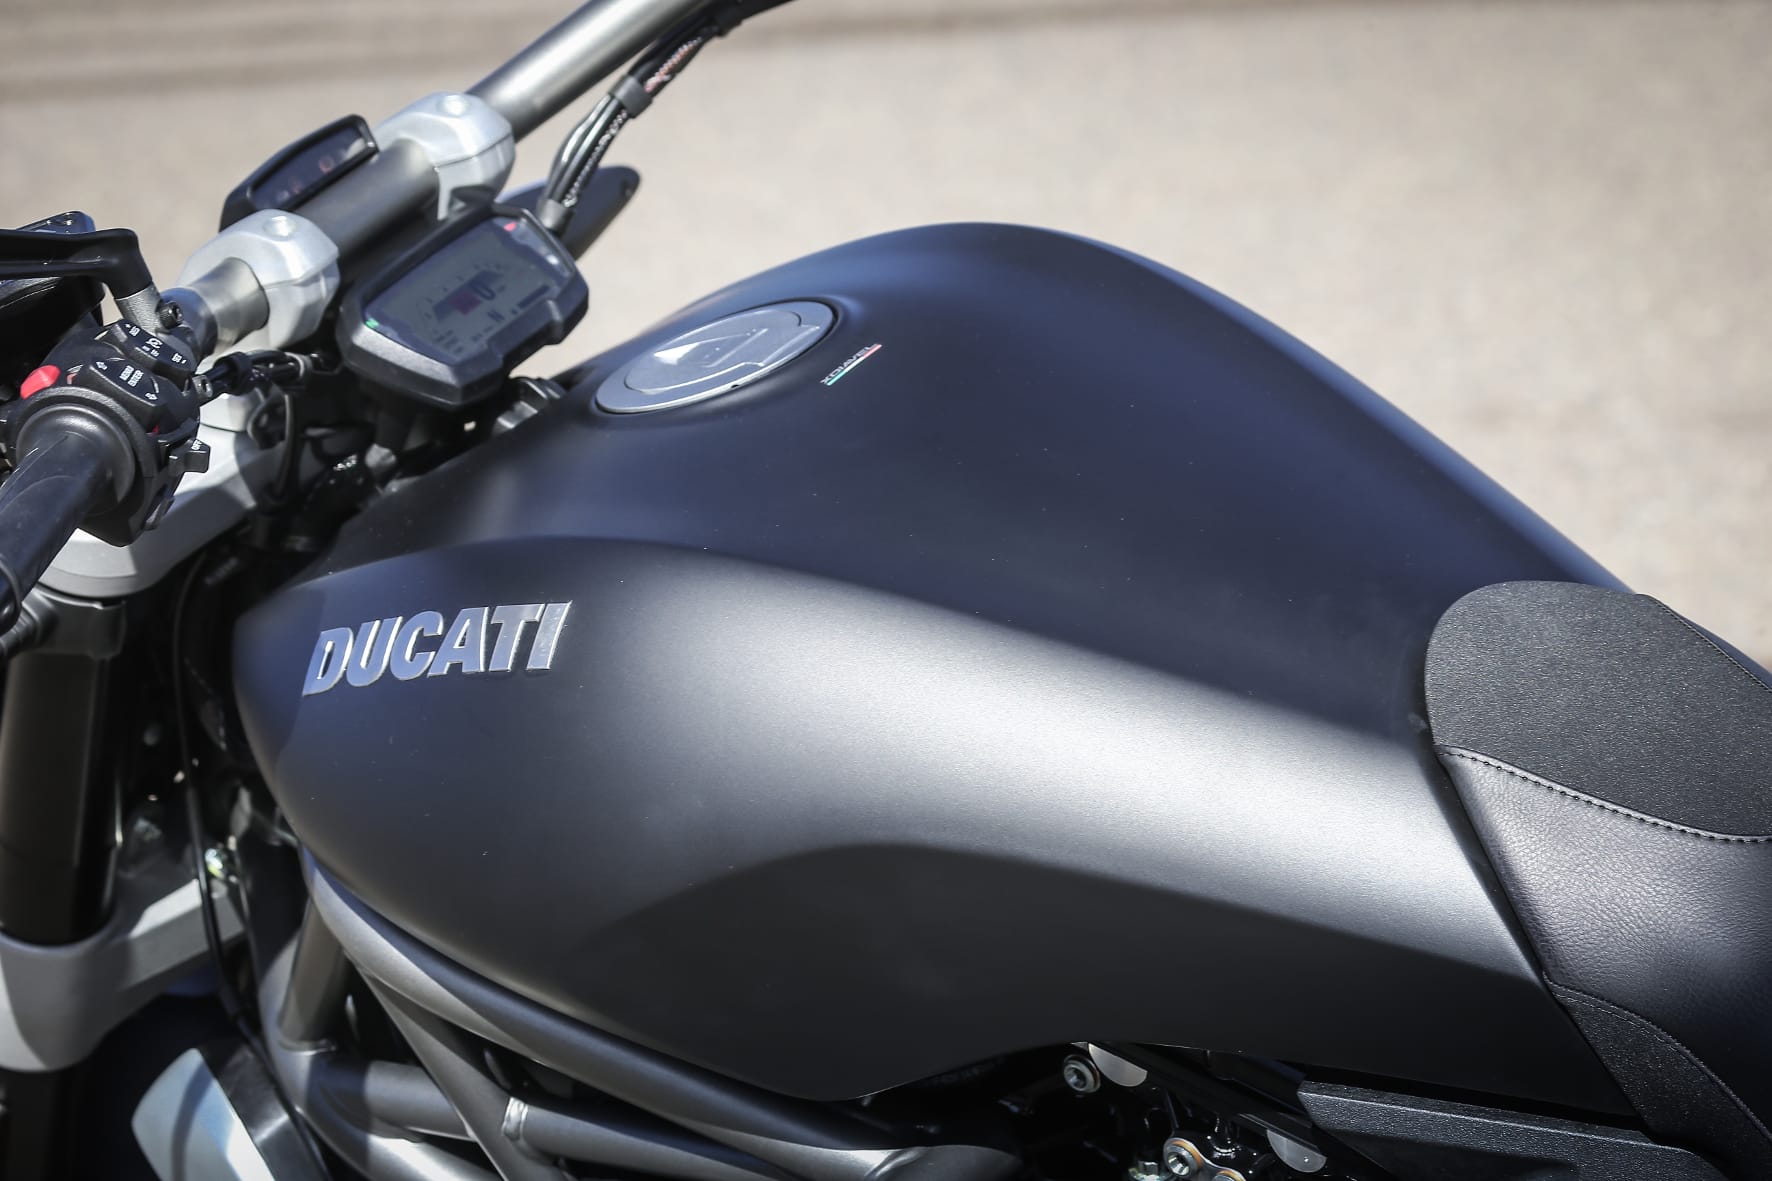 Minimalistisch und digital: das Anzeige-Instrument der Ducati XDiavel.